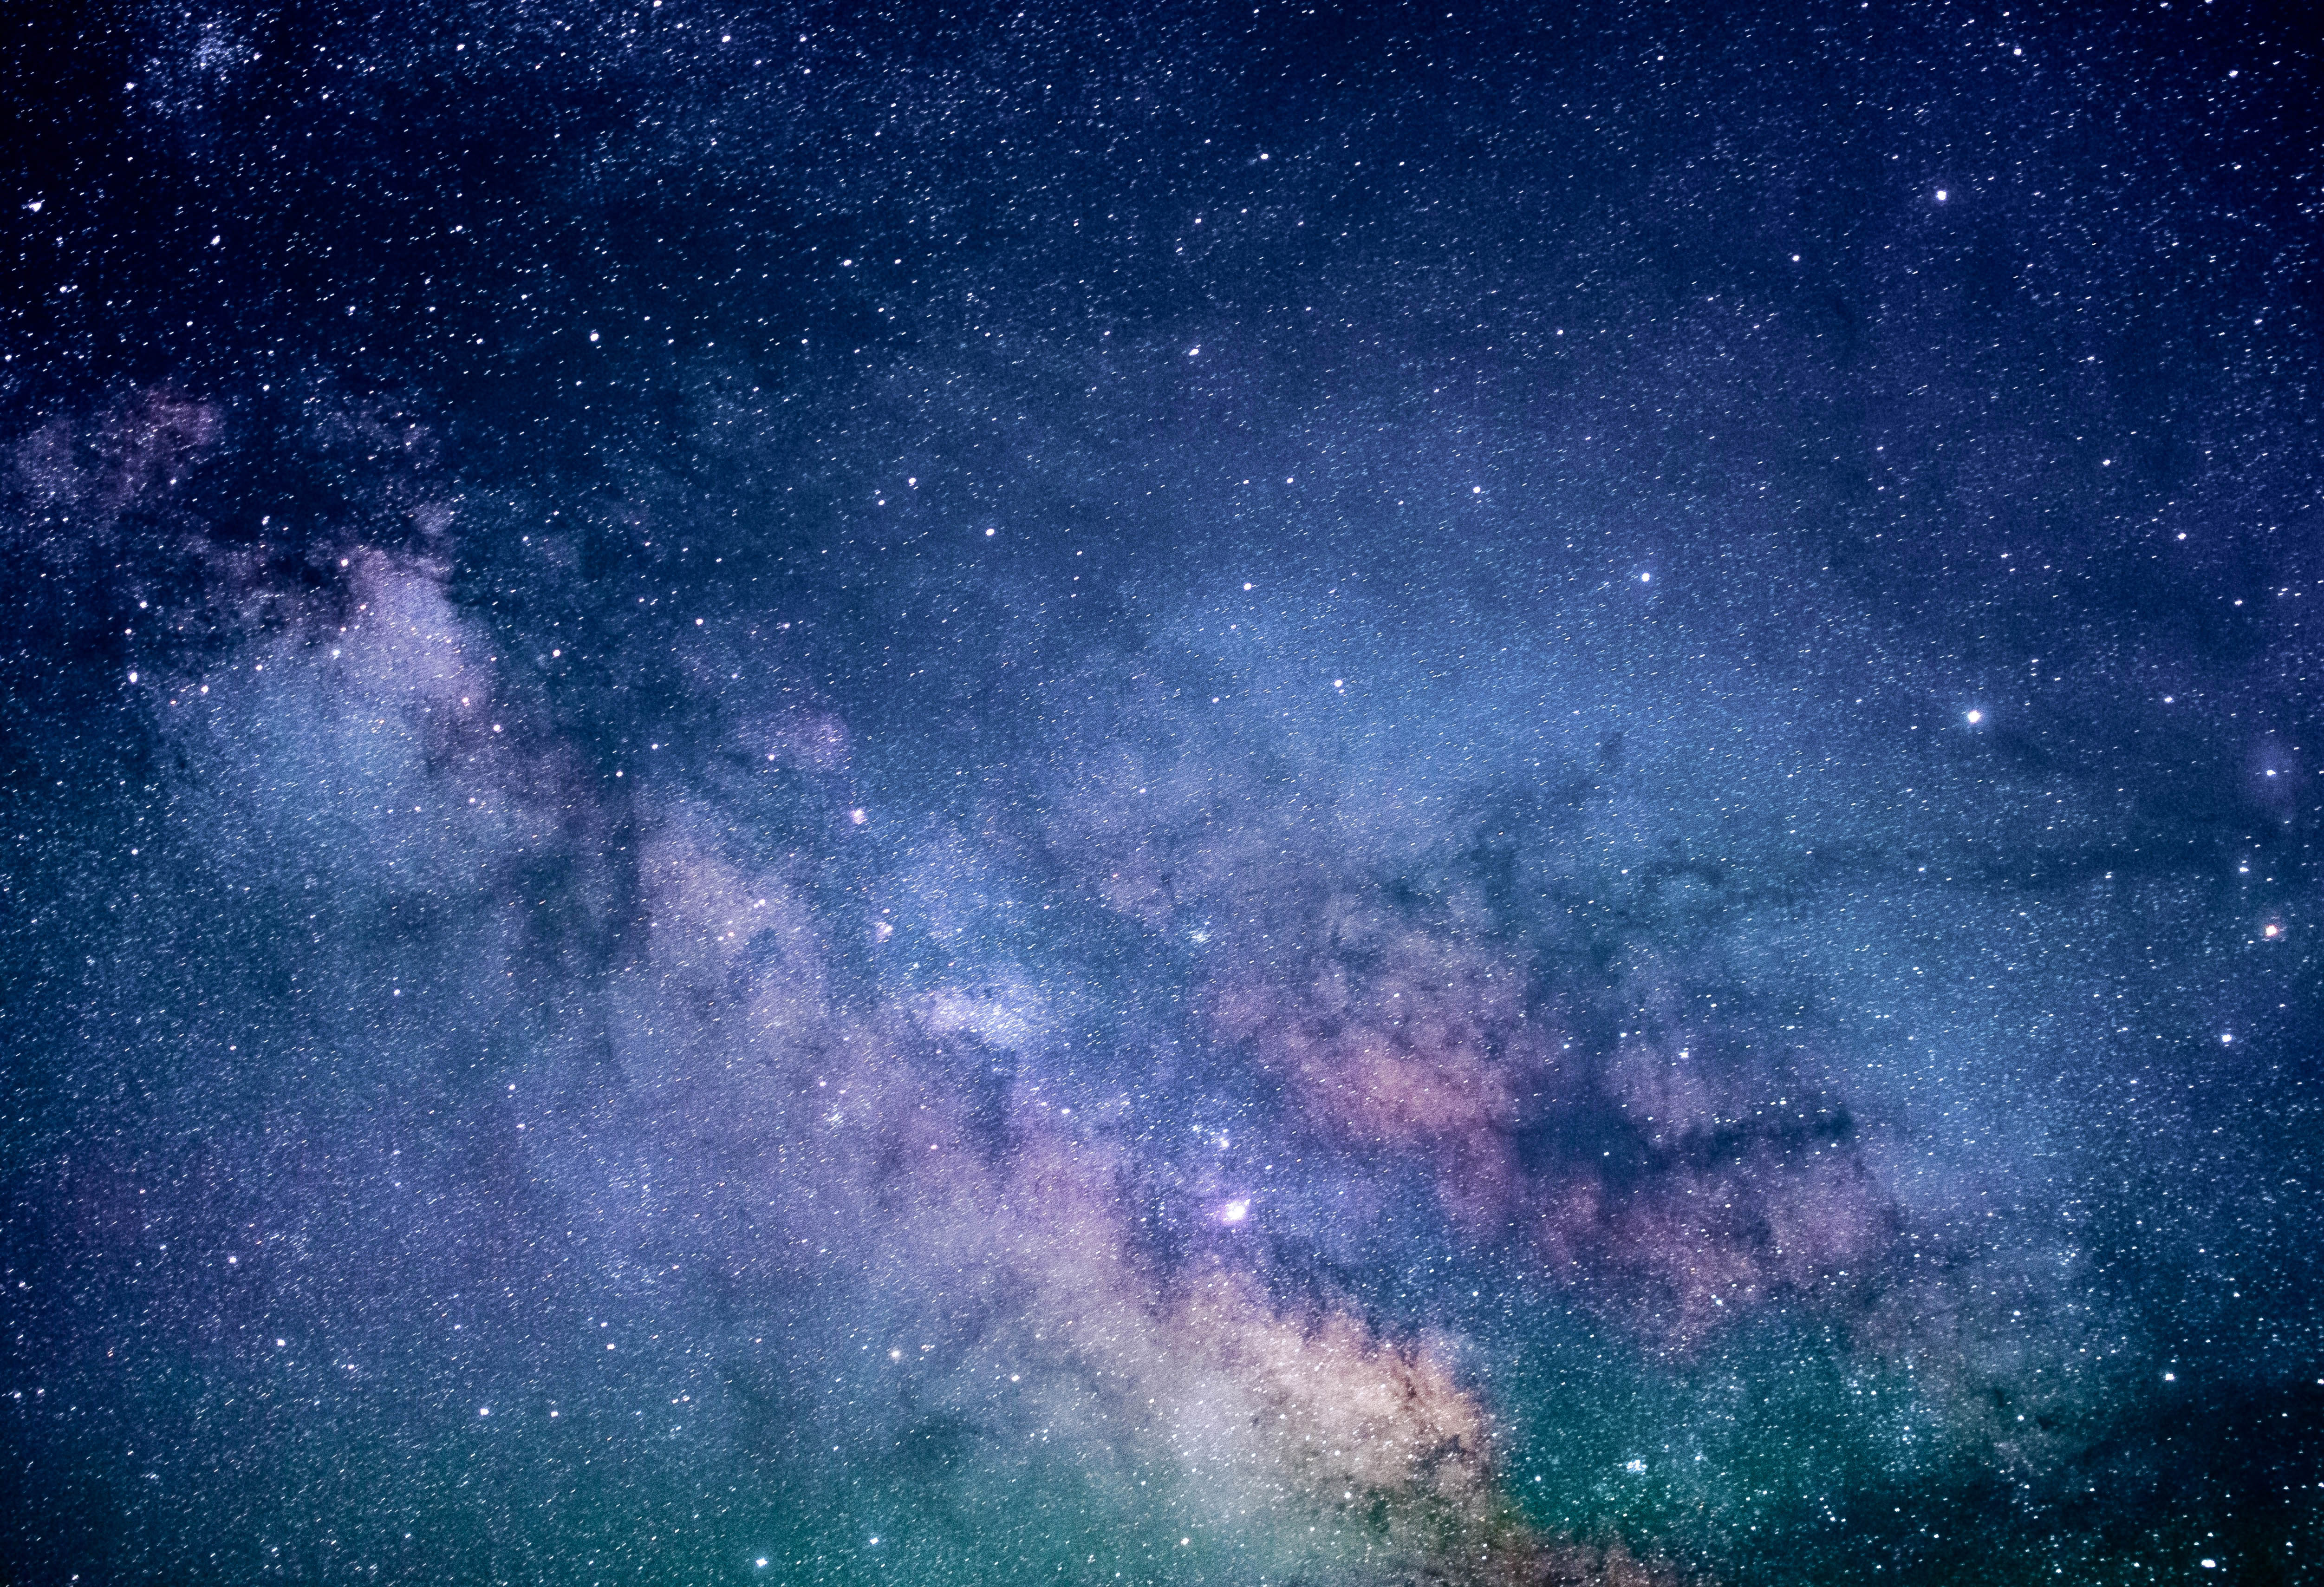 Starry Milky Way Galaxy Image Free Stock Photo Public Domain Photo